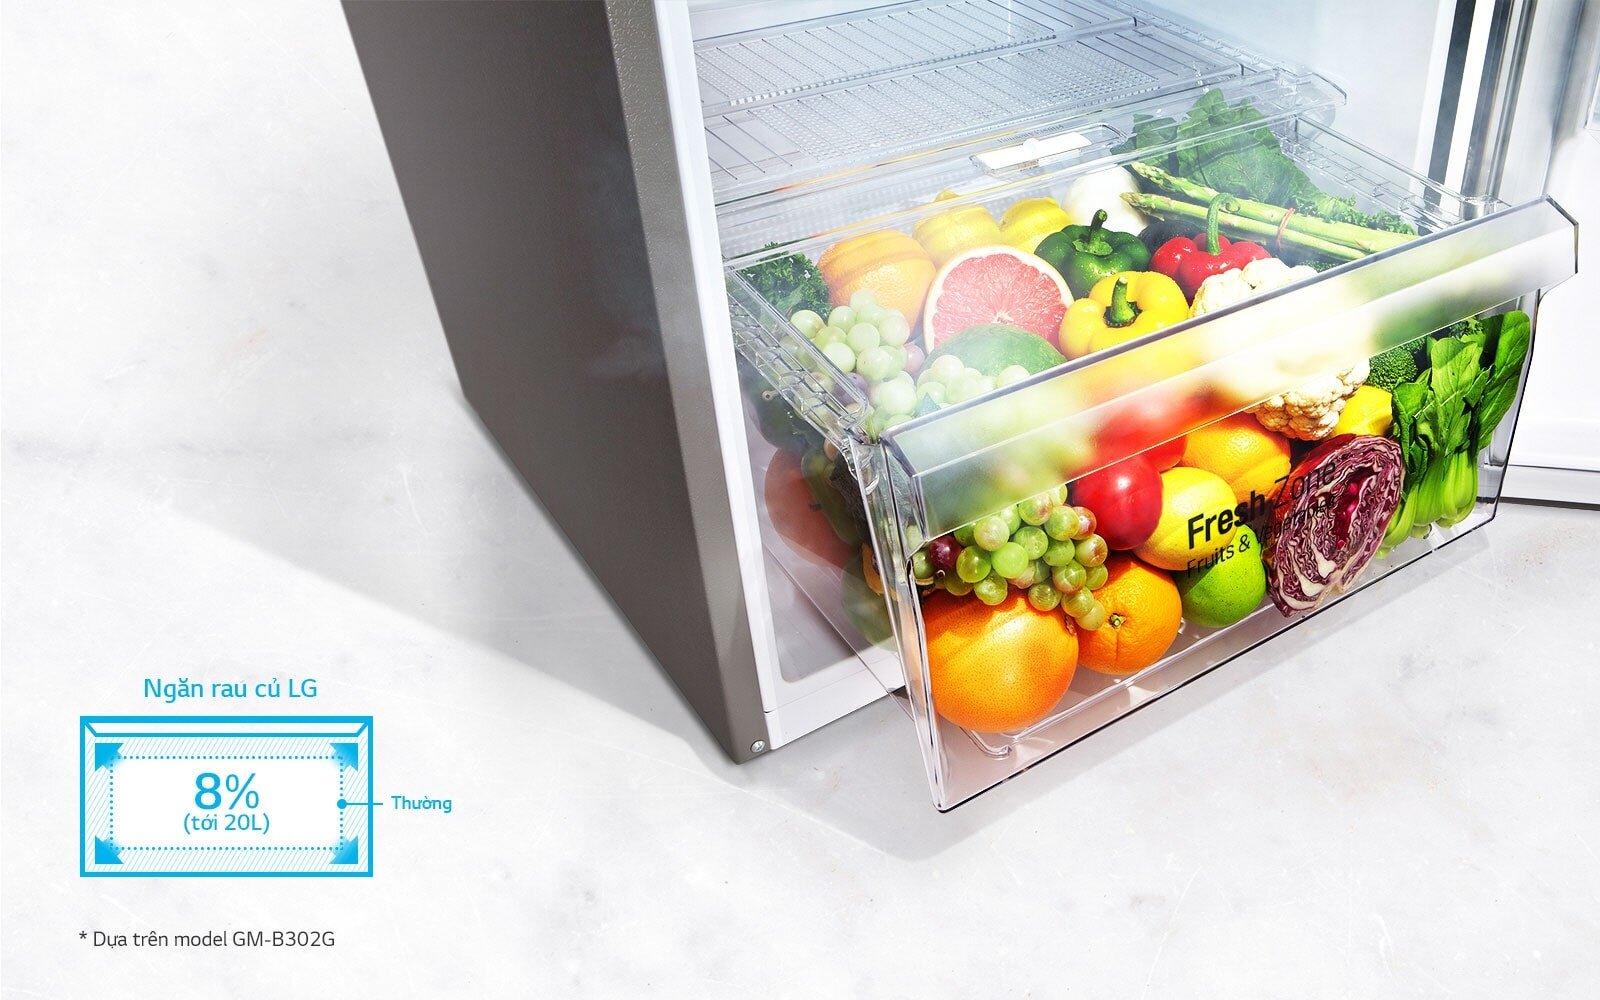 Tủ lạnh OMEGA của LG thiết kế hiện đại với chất liệu thép không gỉ cao cấp tô điểm cho không gian nhà bạn thêm phần sang trọng.